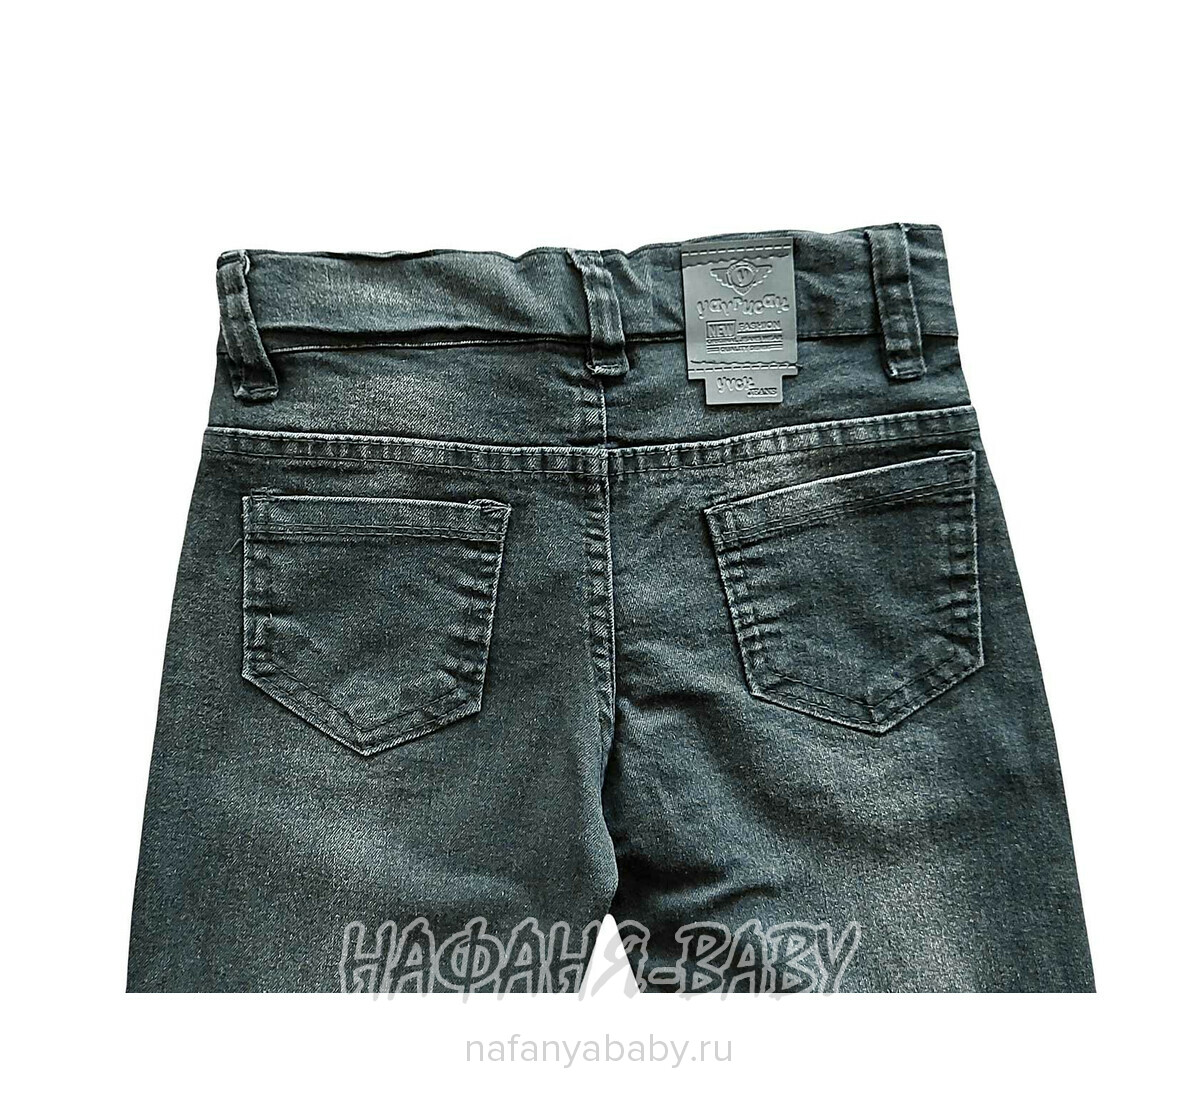 Детские джинсы YAVRUCAK арт: 4202 для мальчика от 3 до 7 лет, цвет черный, оптом Турция